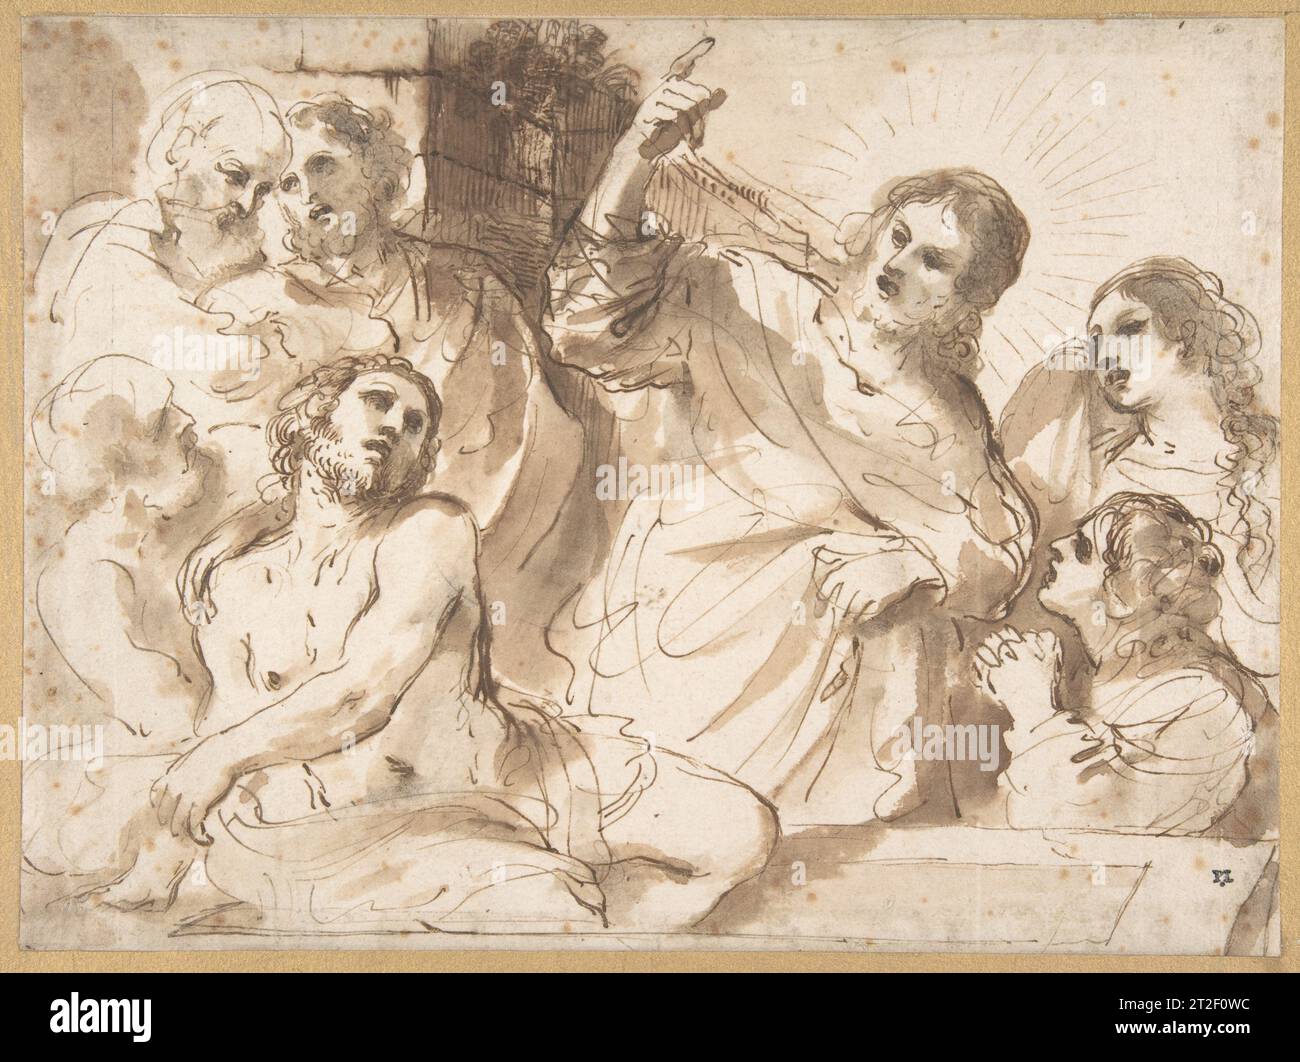 L'allevamento di Lazzaro Guercino (Giovanni Francesco Barbieri) italiano ca. 1619 questo disegno è stato identificato da Sir Denis Mahon come uno degli studi preparatori di Guercino per l'allevamento di Lazzaro (Parigi, Louvre inv. 1139), un dipinto datato ca. 1619. Un altro studio di composizione collegato ad un dipinto di questo argomento, con numerose differenze di design rispetto al disegno del Museo e al dipinto finito, si trova nel Teylers Museum, Haarlem (inv. H 45: Vedi Tuyll Van Serooskerken 1991, Cat. no 5). Il profilo delle forme e l'uso del lavaggio sono estremamente descrittivi, come è tipico delle composizioni Foto Stock